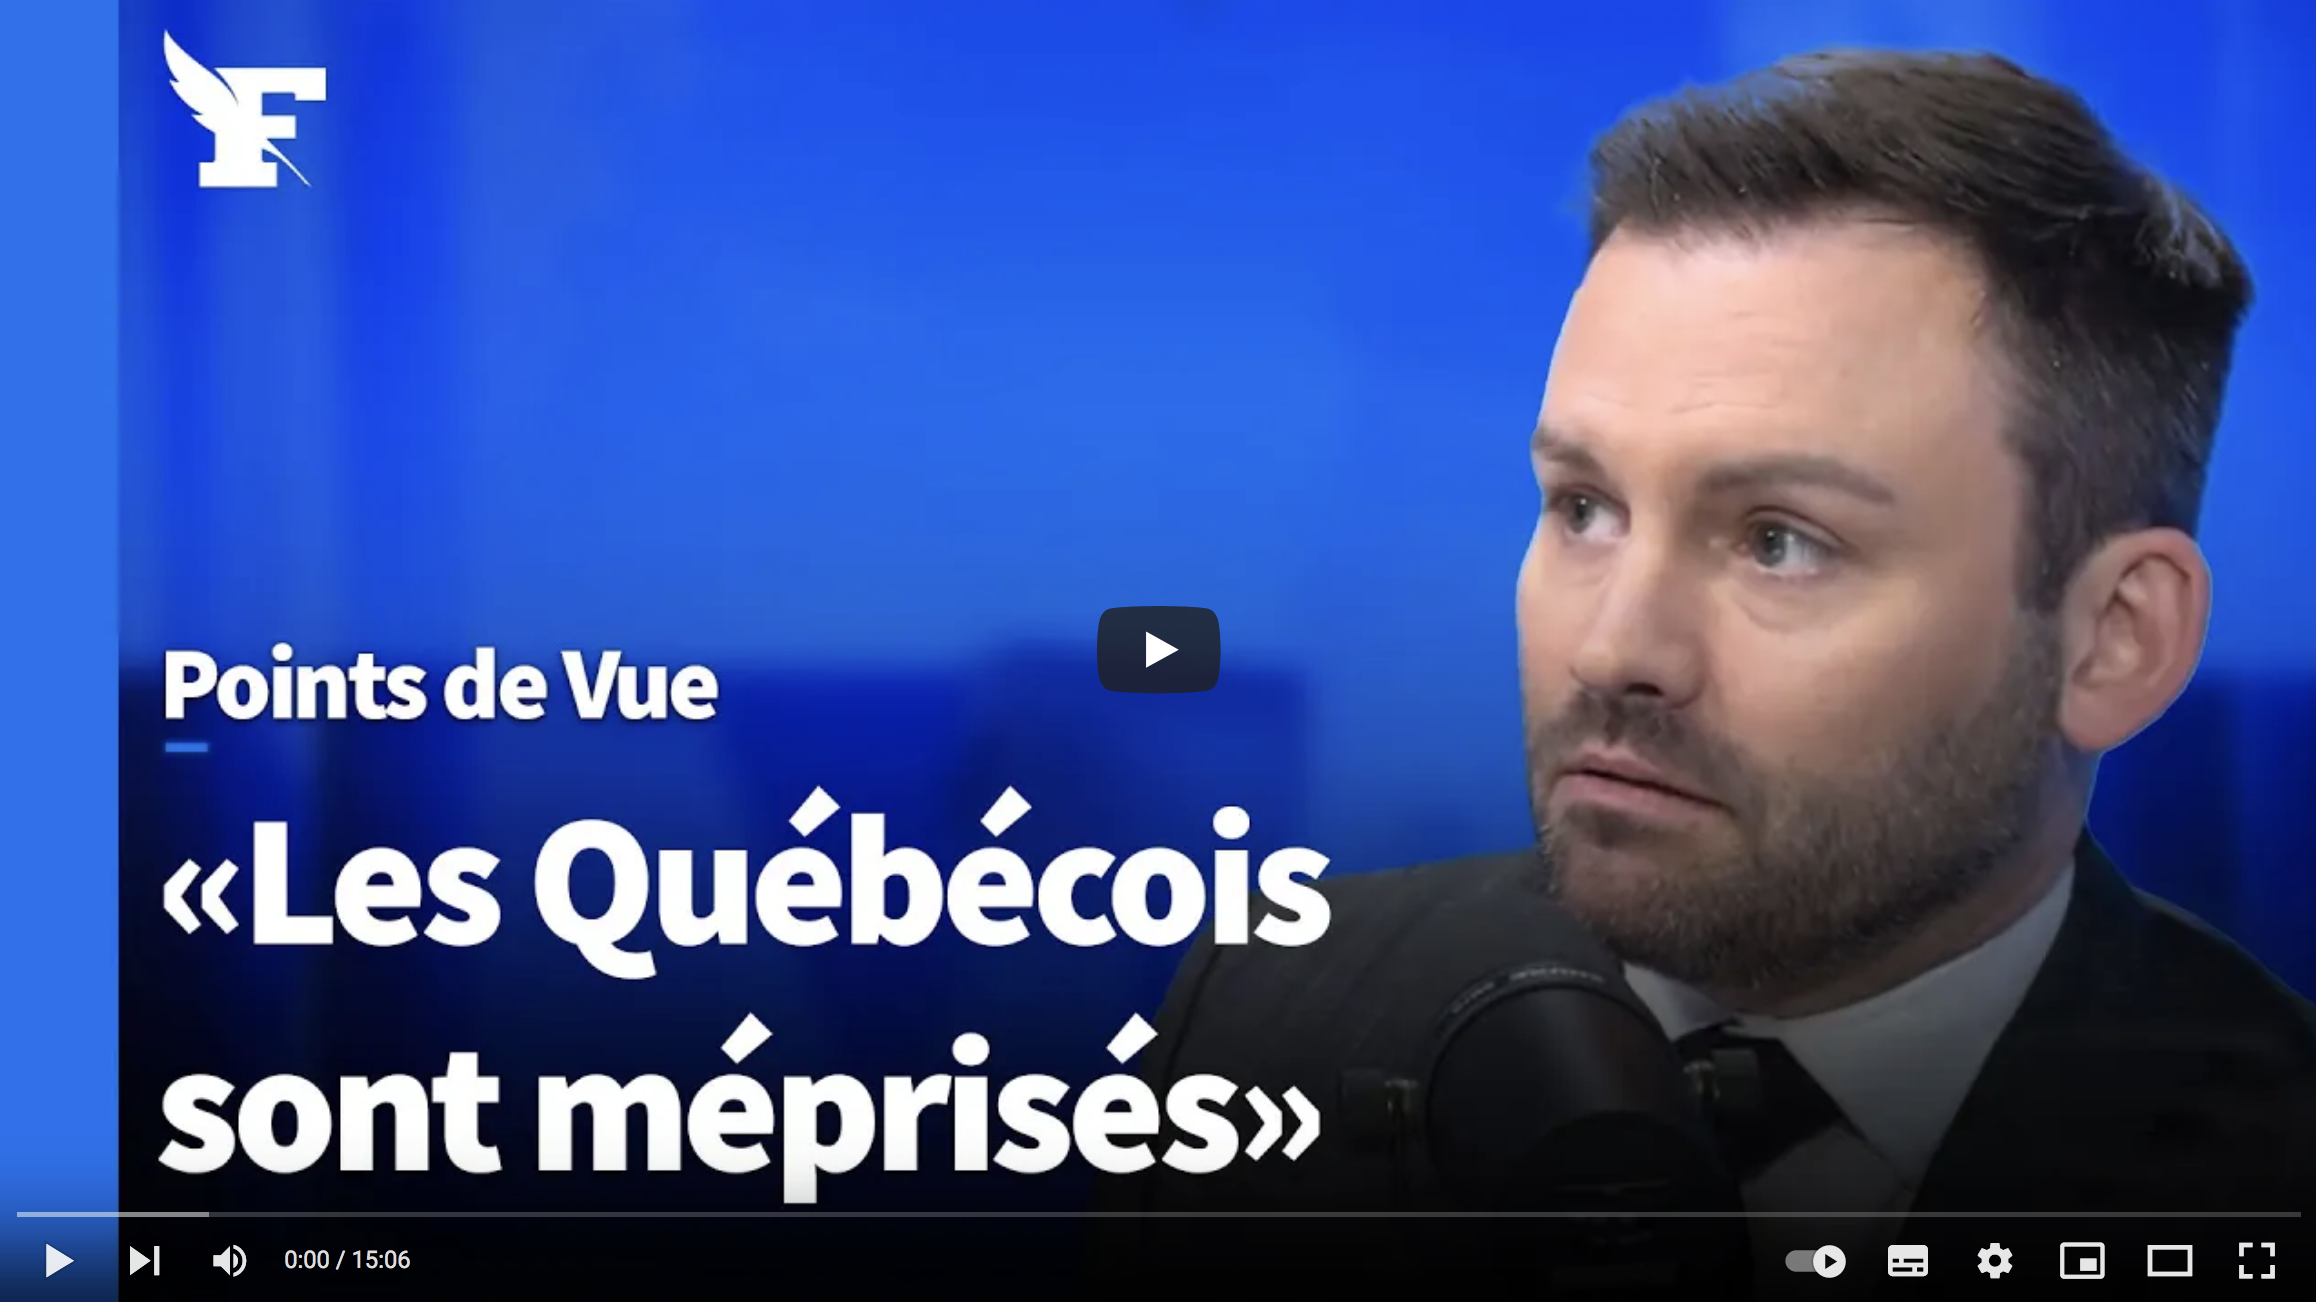 Le chef du Parti Québécois : « La France n’a pas à se soumettre à l’impérialisme anglophone » (VIDÉO)